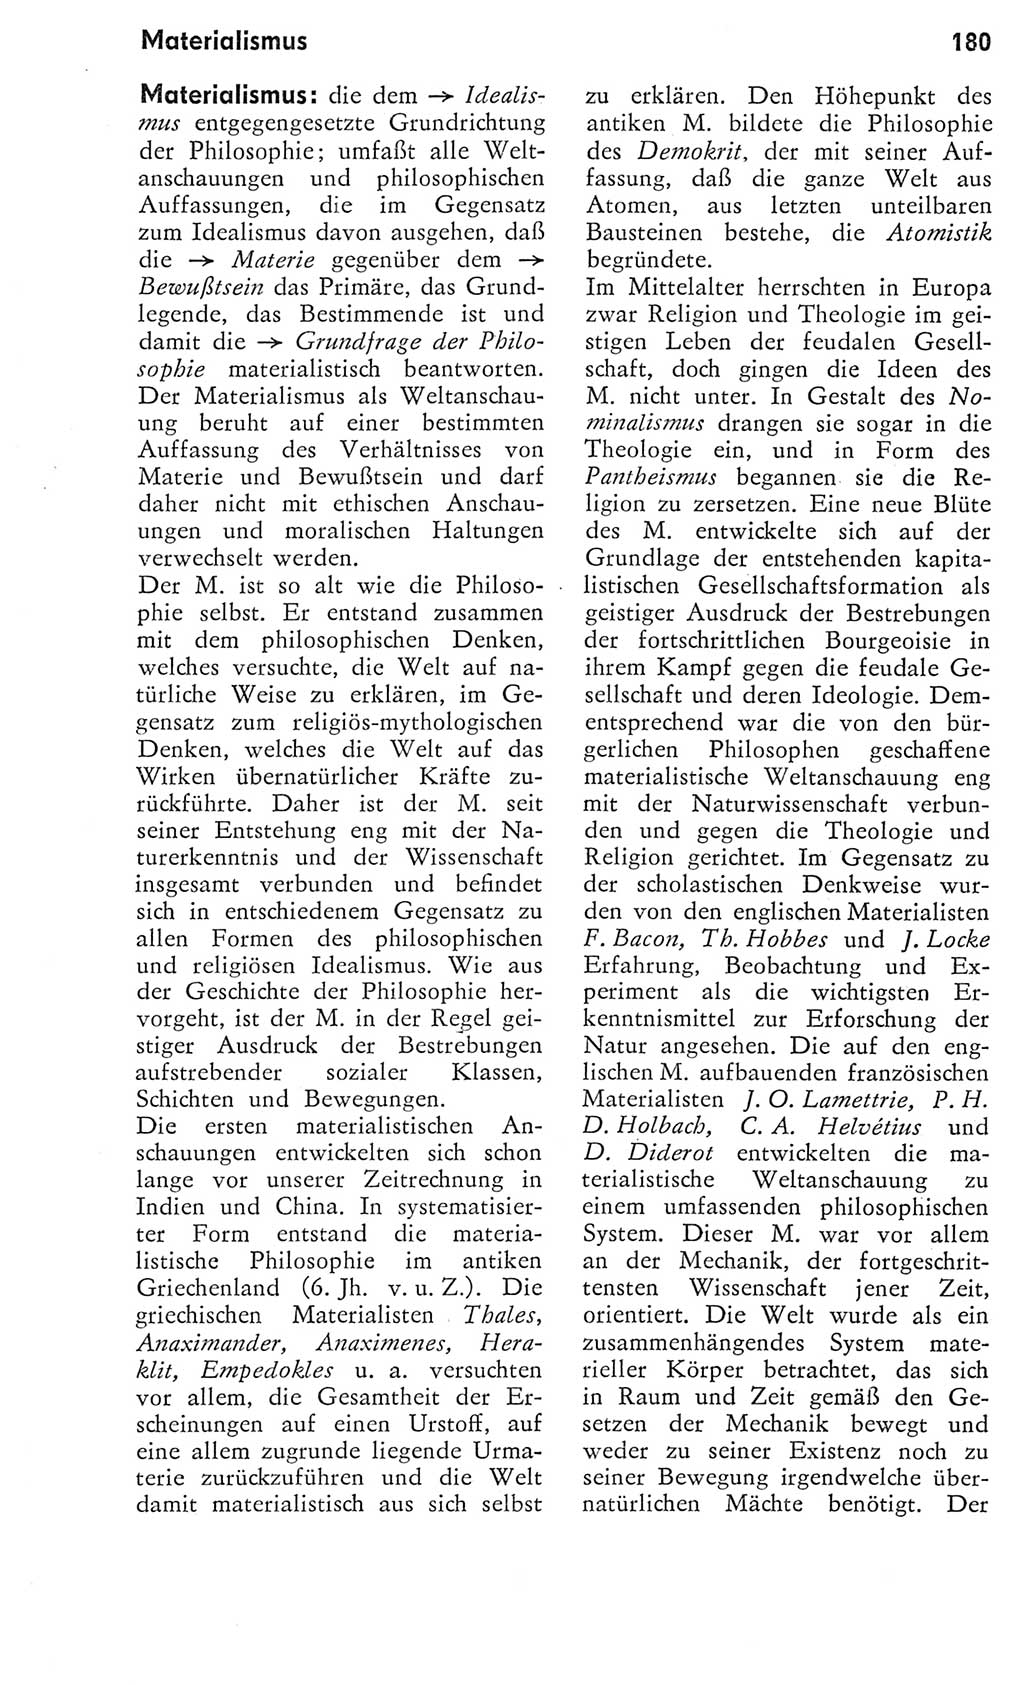 Kleines Wörterbuch der marxistisch-leninistischen Philosophie [Deutsche Demokratische Republik (DDR)] 1975, Seite 180 (Kl. Wb. ML Phil. DDR 1975, S. 180)